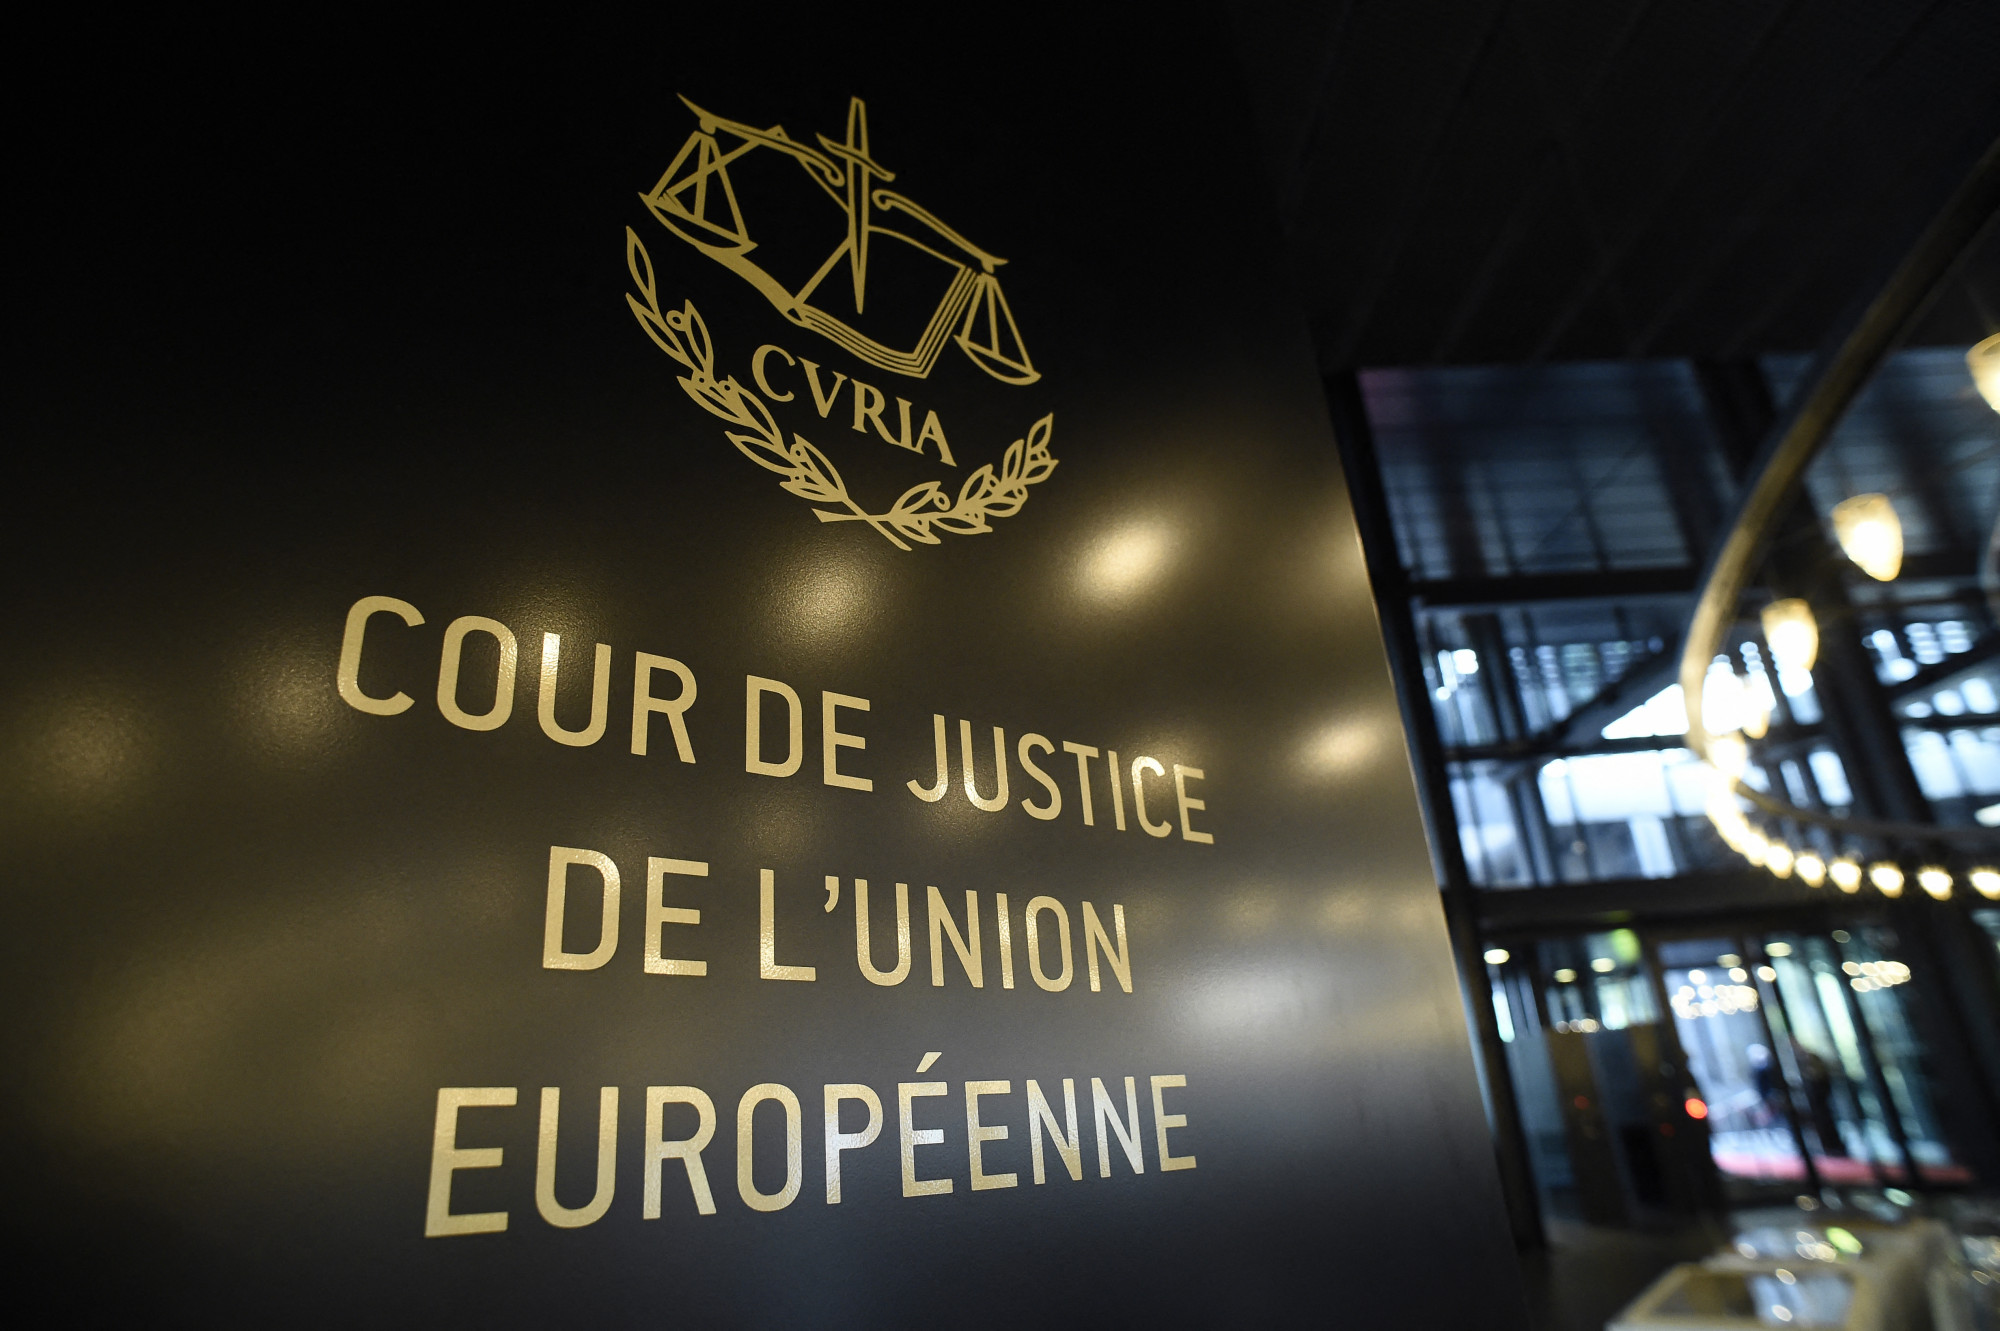 A strasbourgi bírósághoz fordul a bíró, akit alkalmatlannak minősítettek, miután az Európai Unió Bíróságához fordult egy menekültügyi szabály miatt